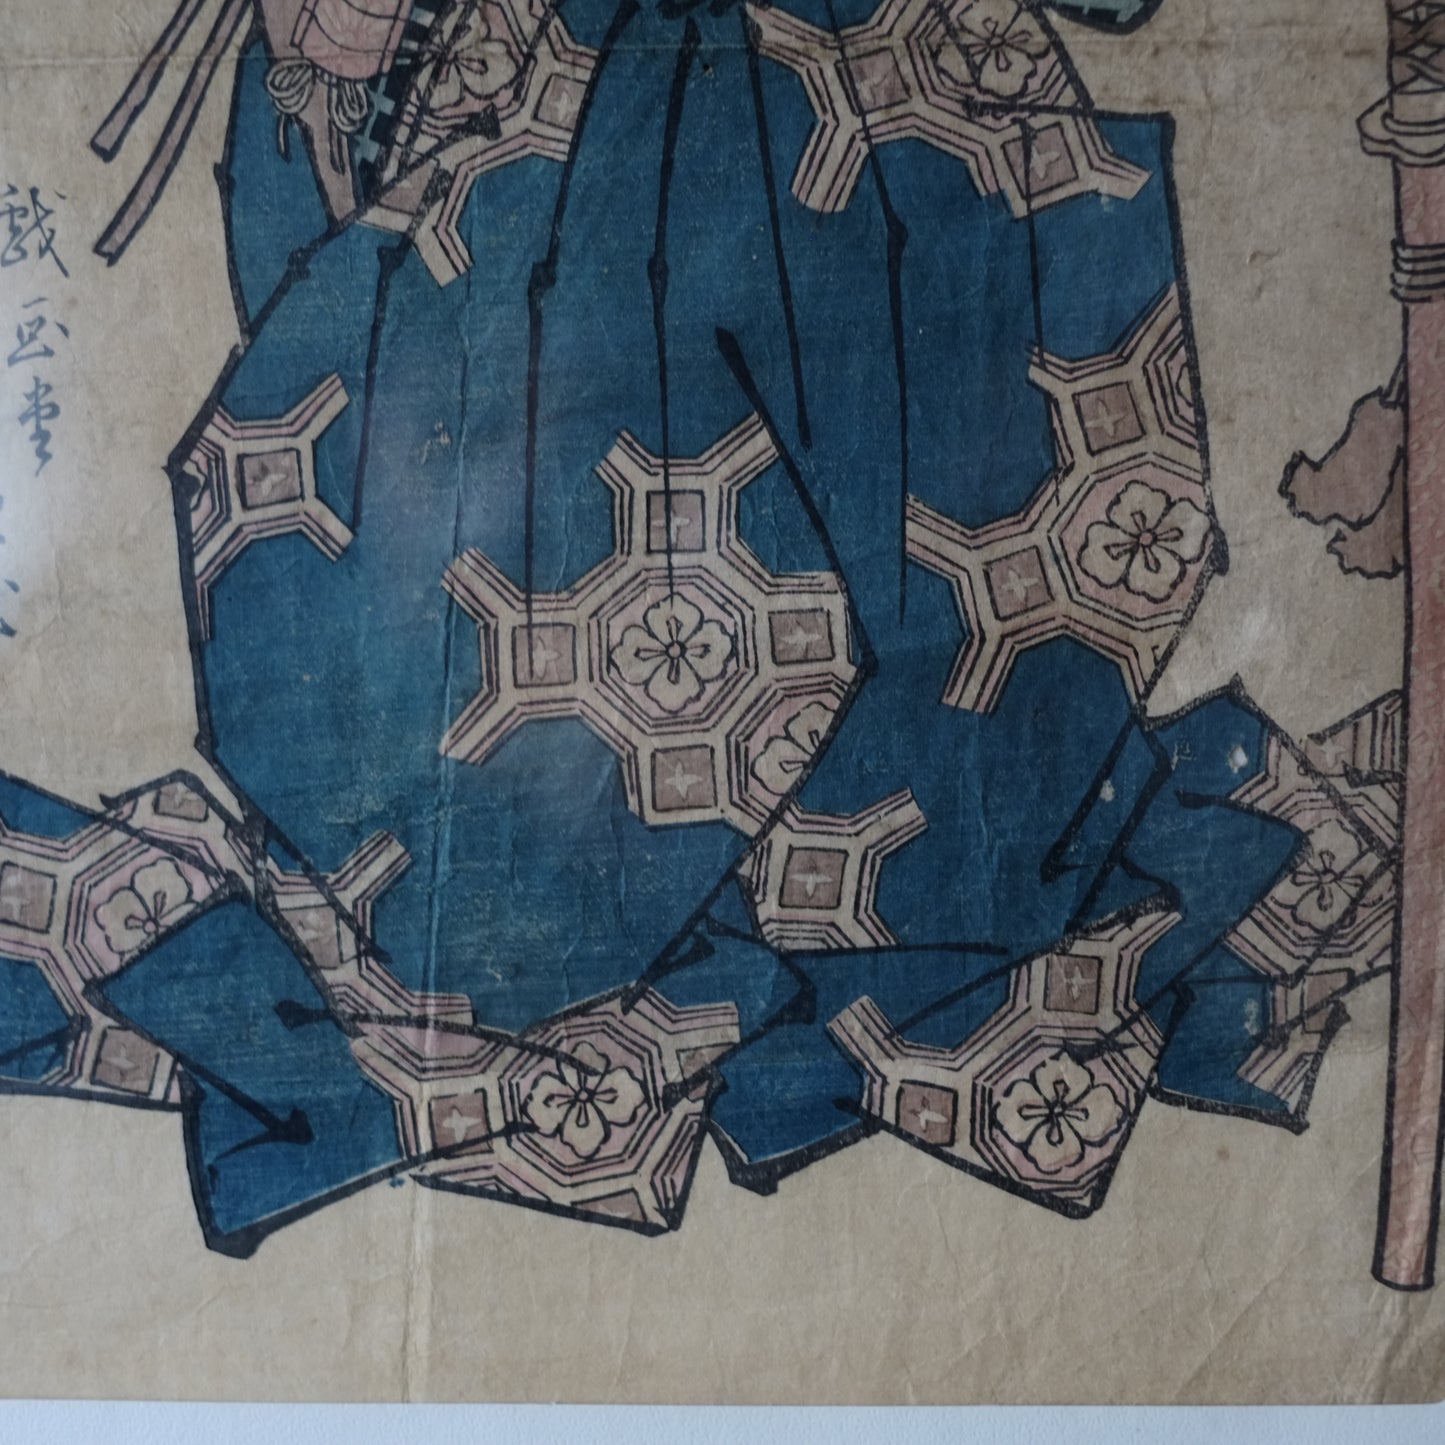 戯画堂芦幸　上方浮世絵　手刷木版画(江戸時代)